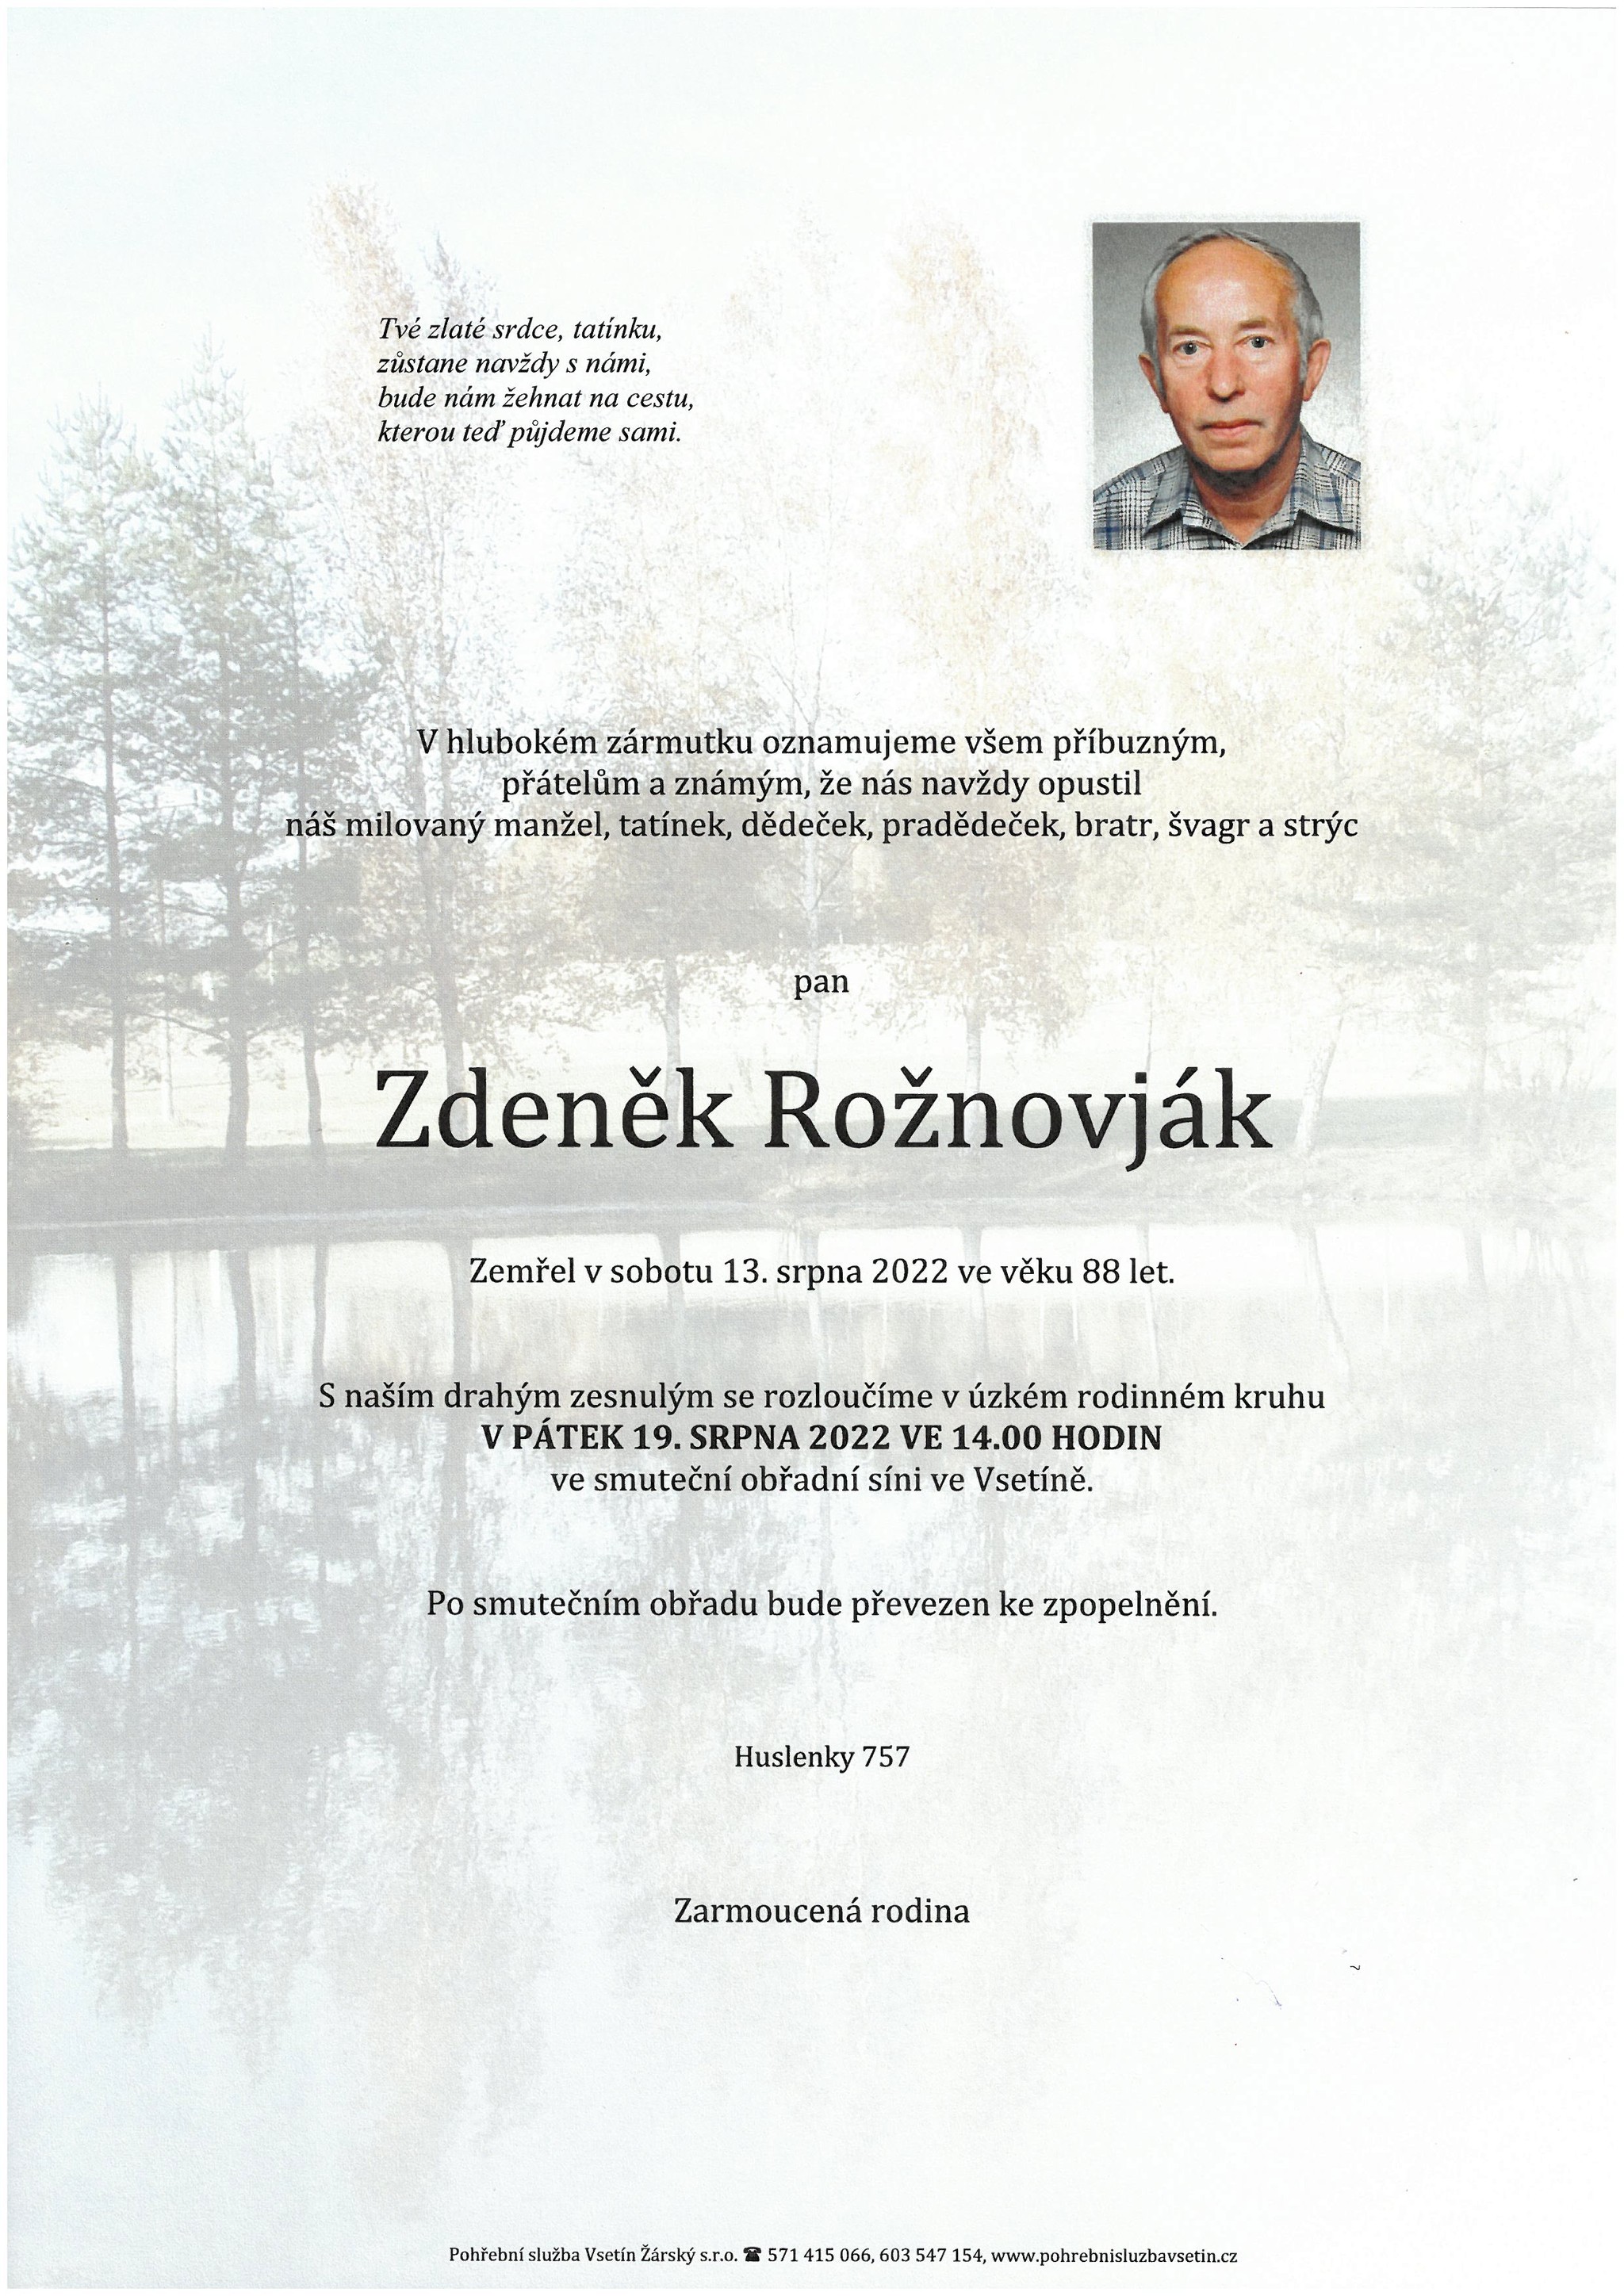 Zdeněk Rožnovják